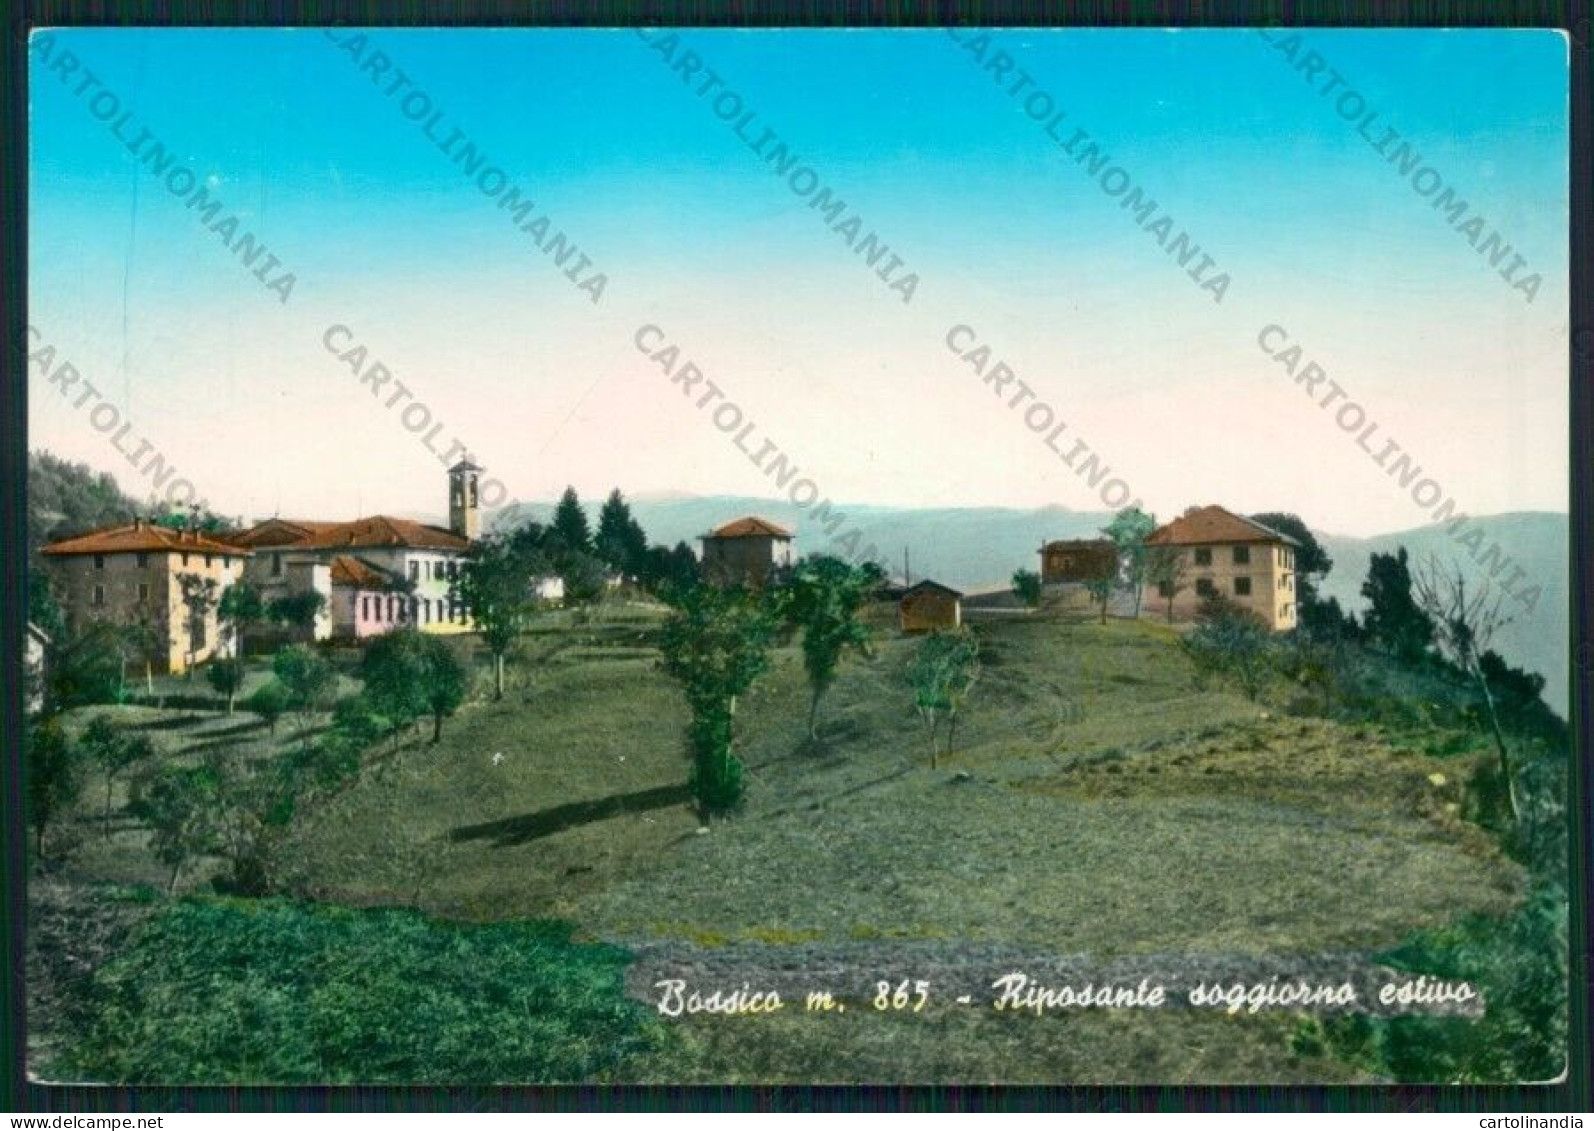 Bergamo Bossico PIEGHINA Foto FG Cartolina ZK1848 - Bergamo